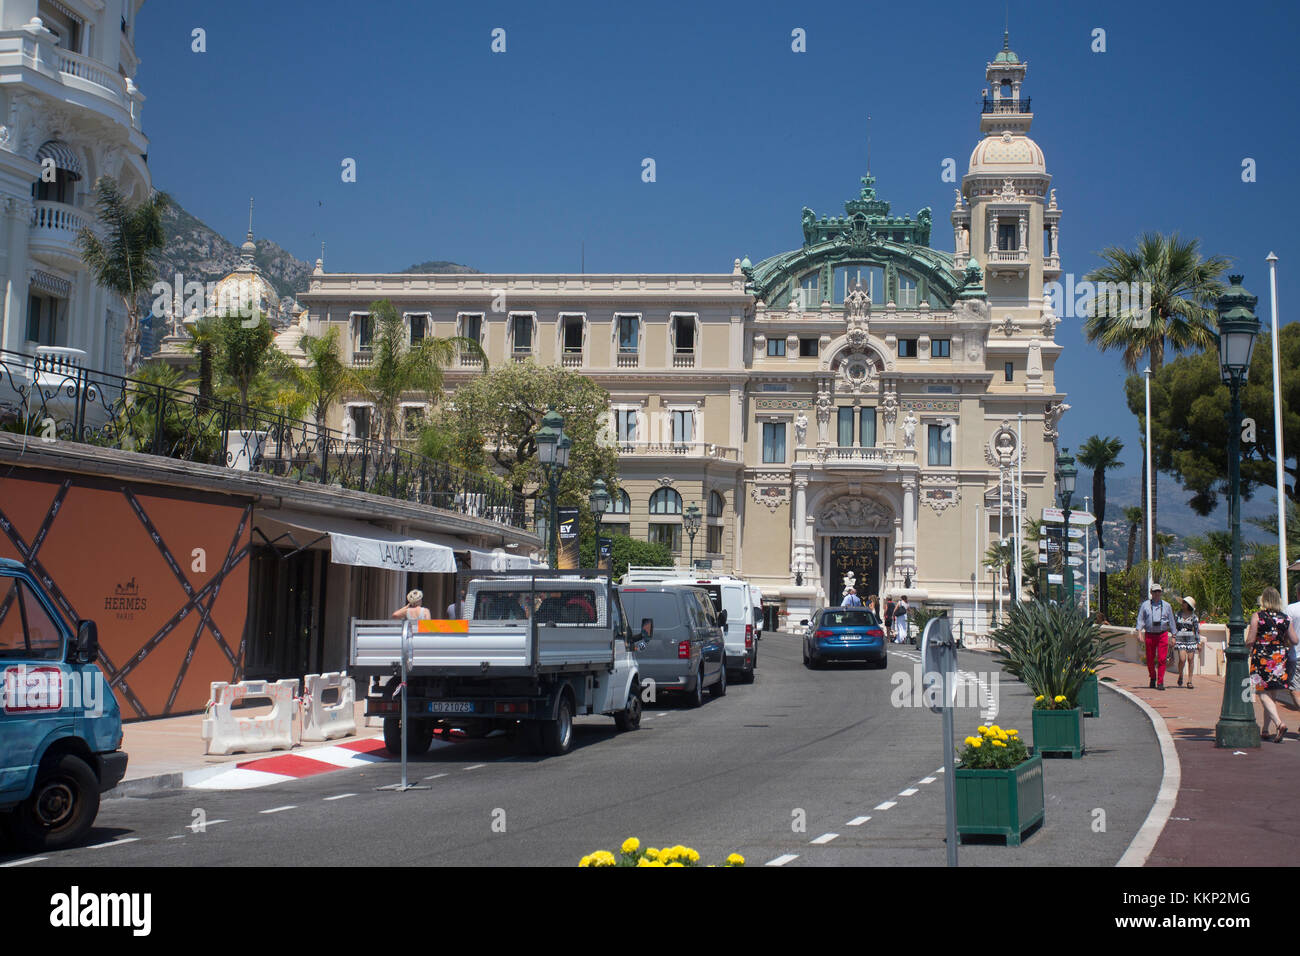 Casino De Monte Carlo seen from road leading into Casino Square Stock Photo